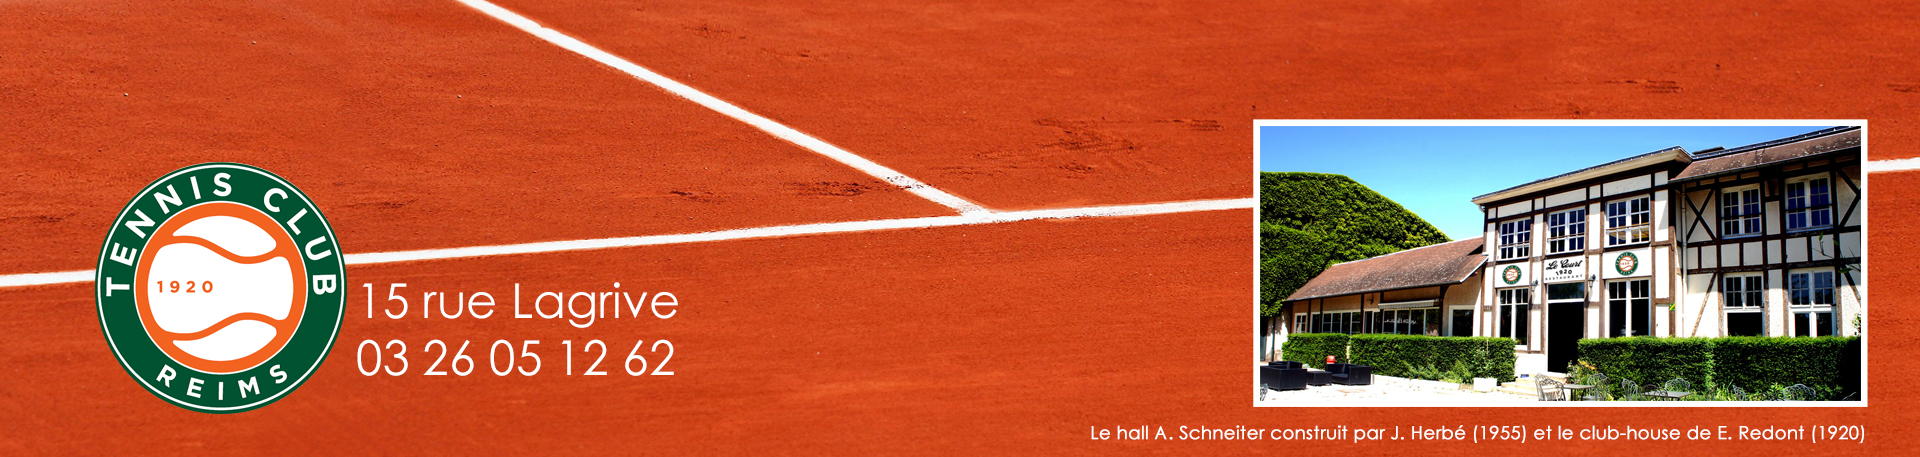 Tennis Club de Reims